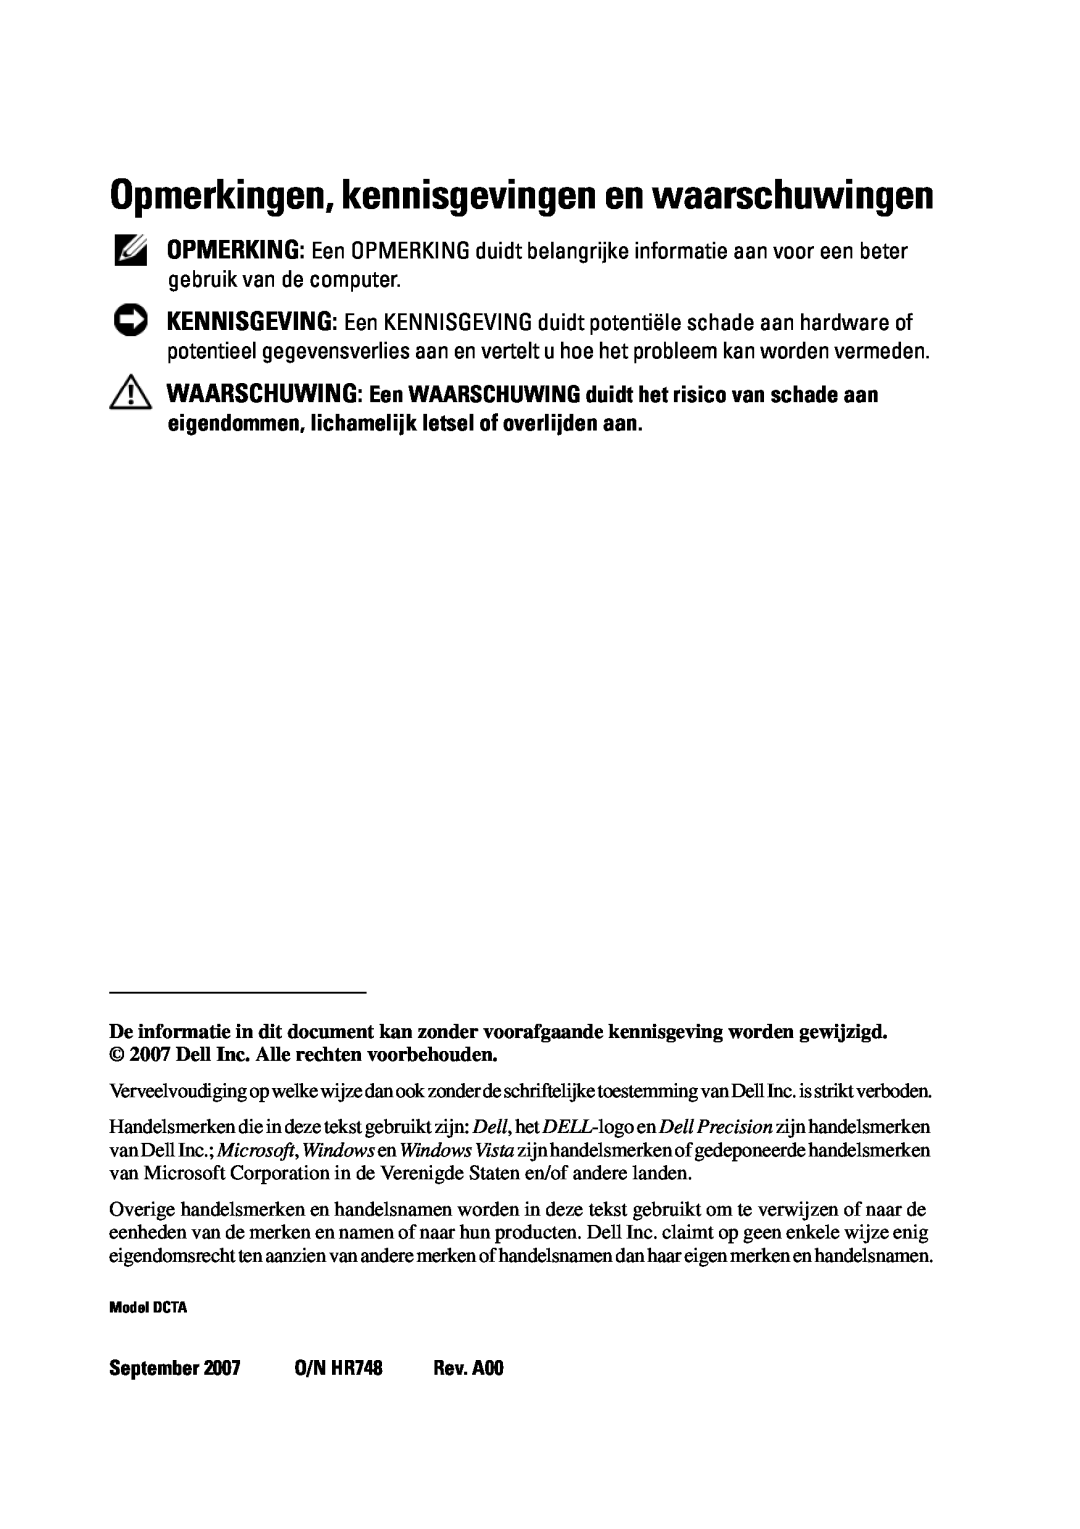 Dell T5400 manual Opmerkingen, kennisgevingen en waarschuwingen, September, O/N HR748 